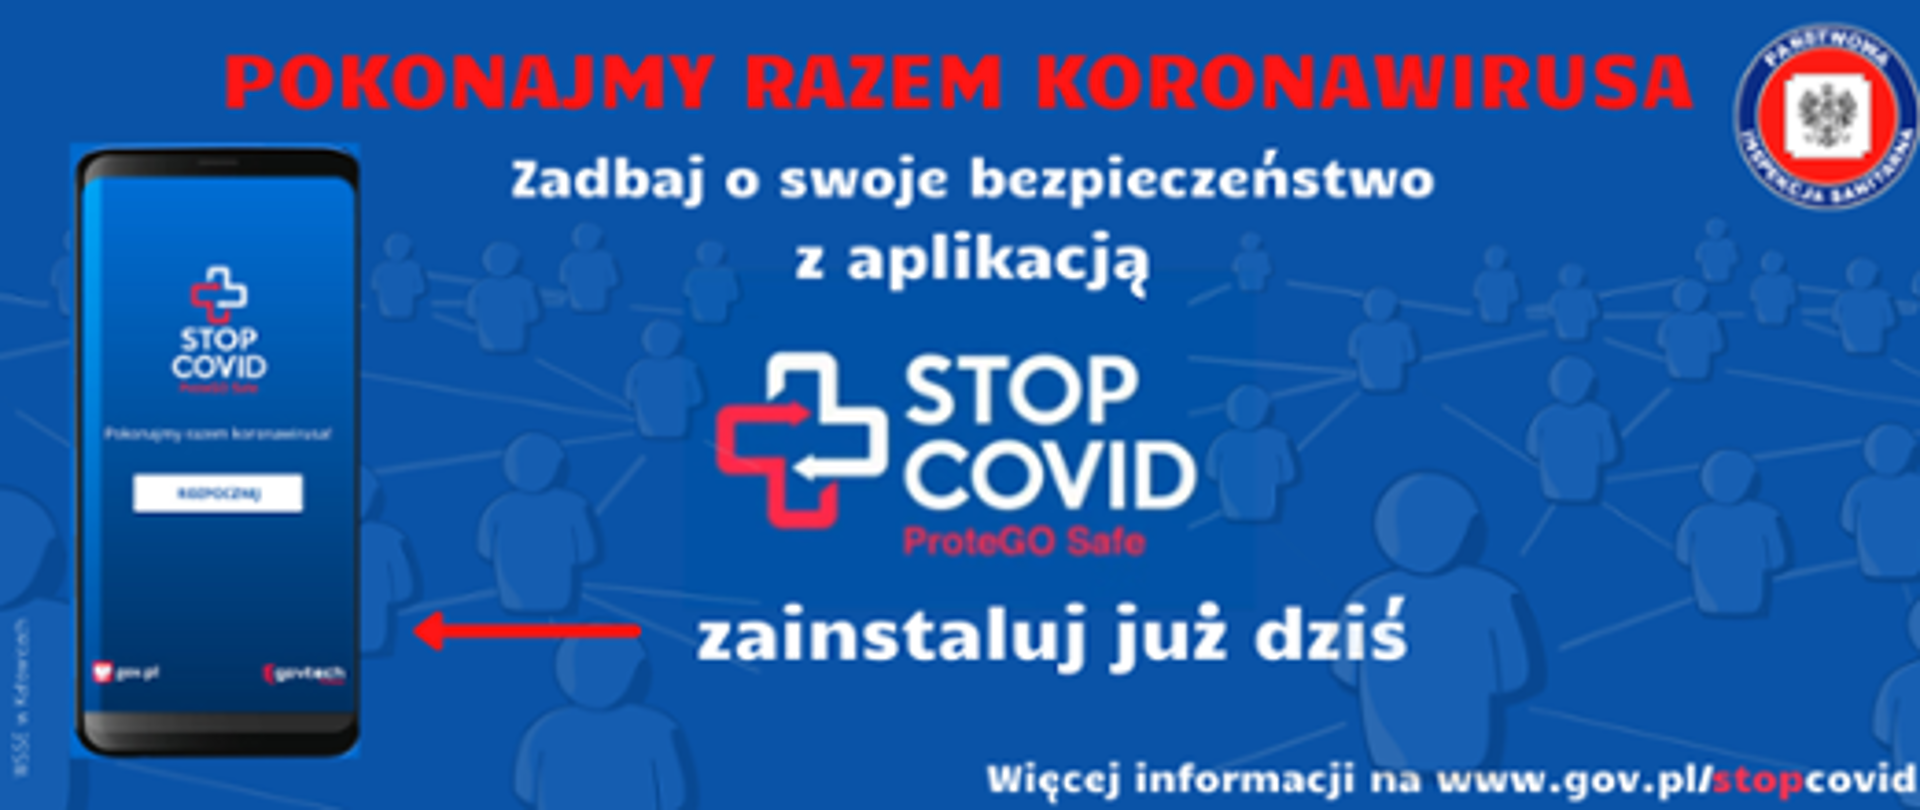 Baner koloru niebieskiego na którym czerwoną czcionką napisane jest POKONAJMY RAZEM KORONAWIRUSA, pod spodem mniejszą czcionką koloru białego Zadbaj o swoje bezpieczeństwo z aplikacją STOP COVID zainstaluj już dziś. Więcej informacji na stronie www.gov.pl/stopcovid